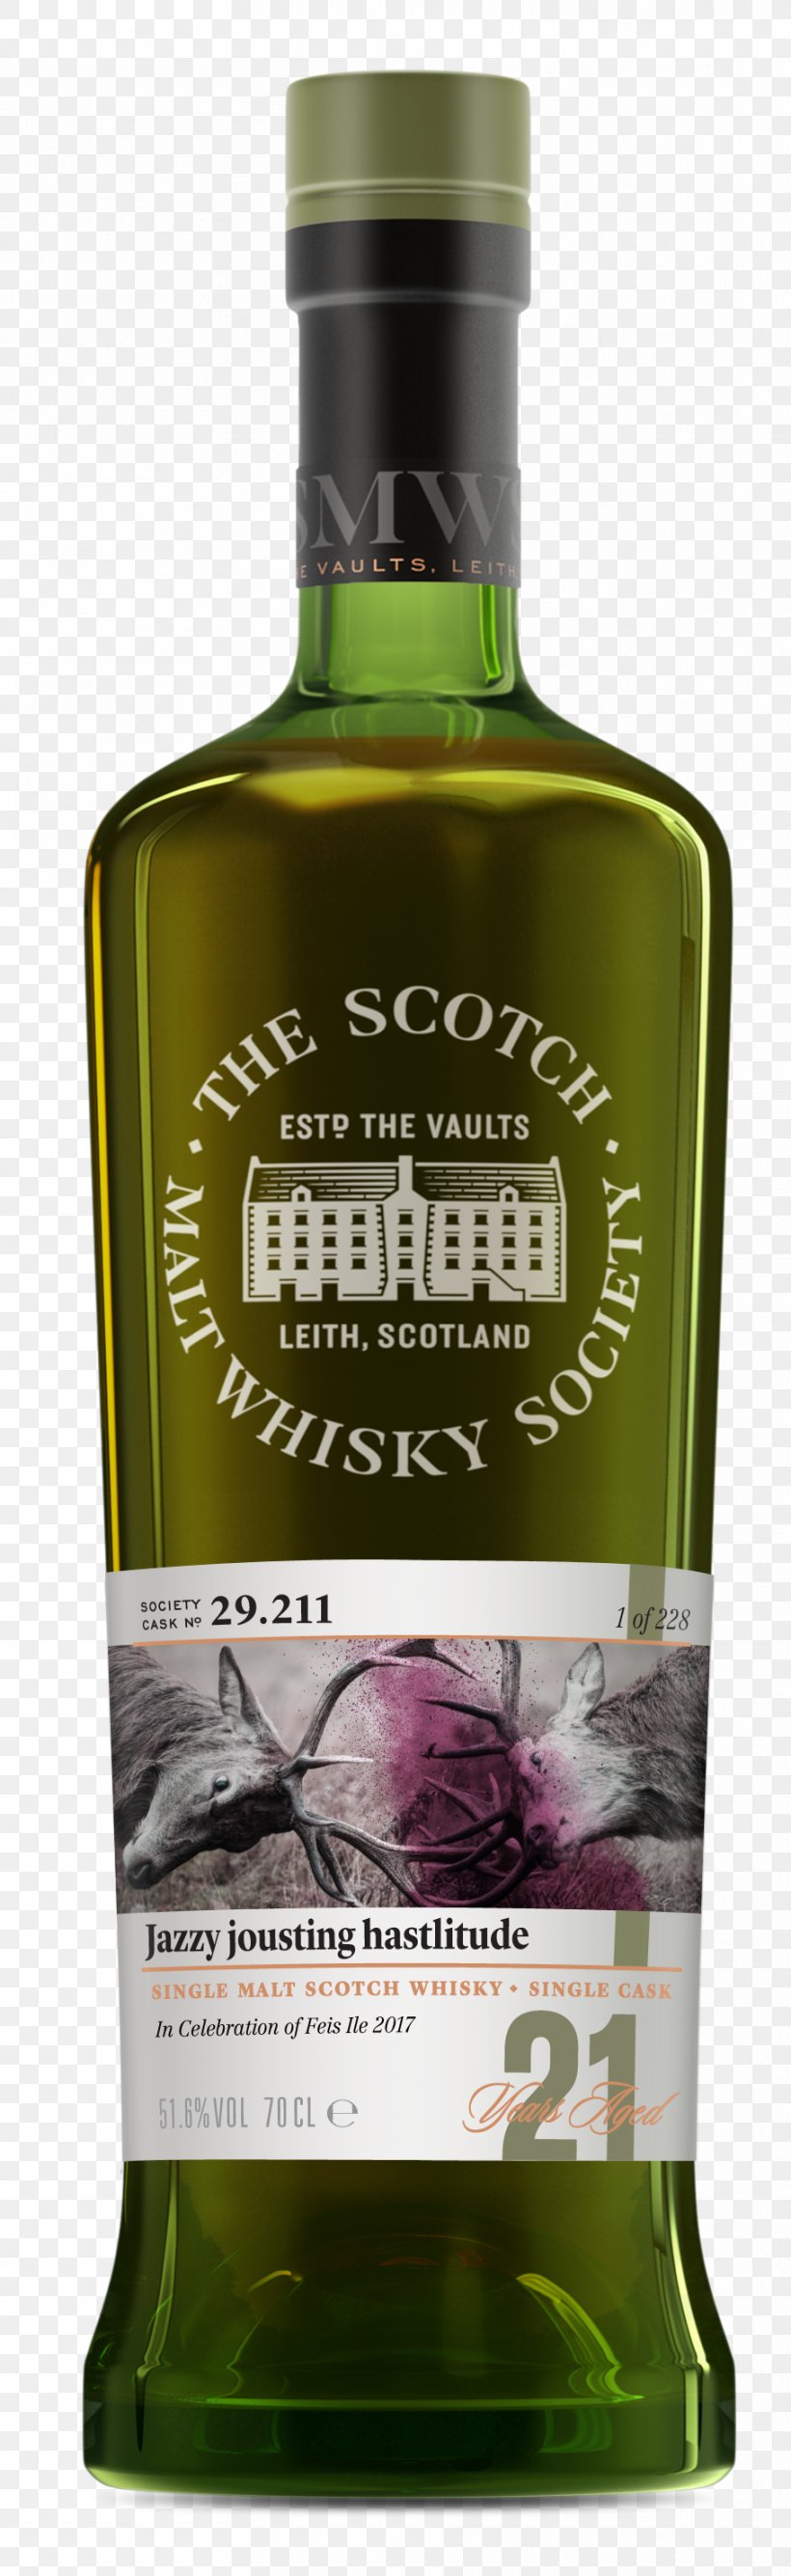 Single Malt Whisky Single Malt Scotch Whisky Whiskey Islay Whisky, PNG, 909x2960px, Single Malt Whisky, Alcoholic Beverage, Bottle, Bowmore, Distilled Beverage Download Free